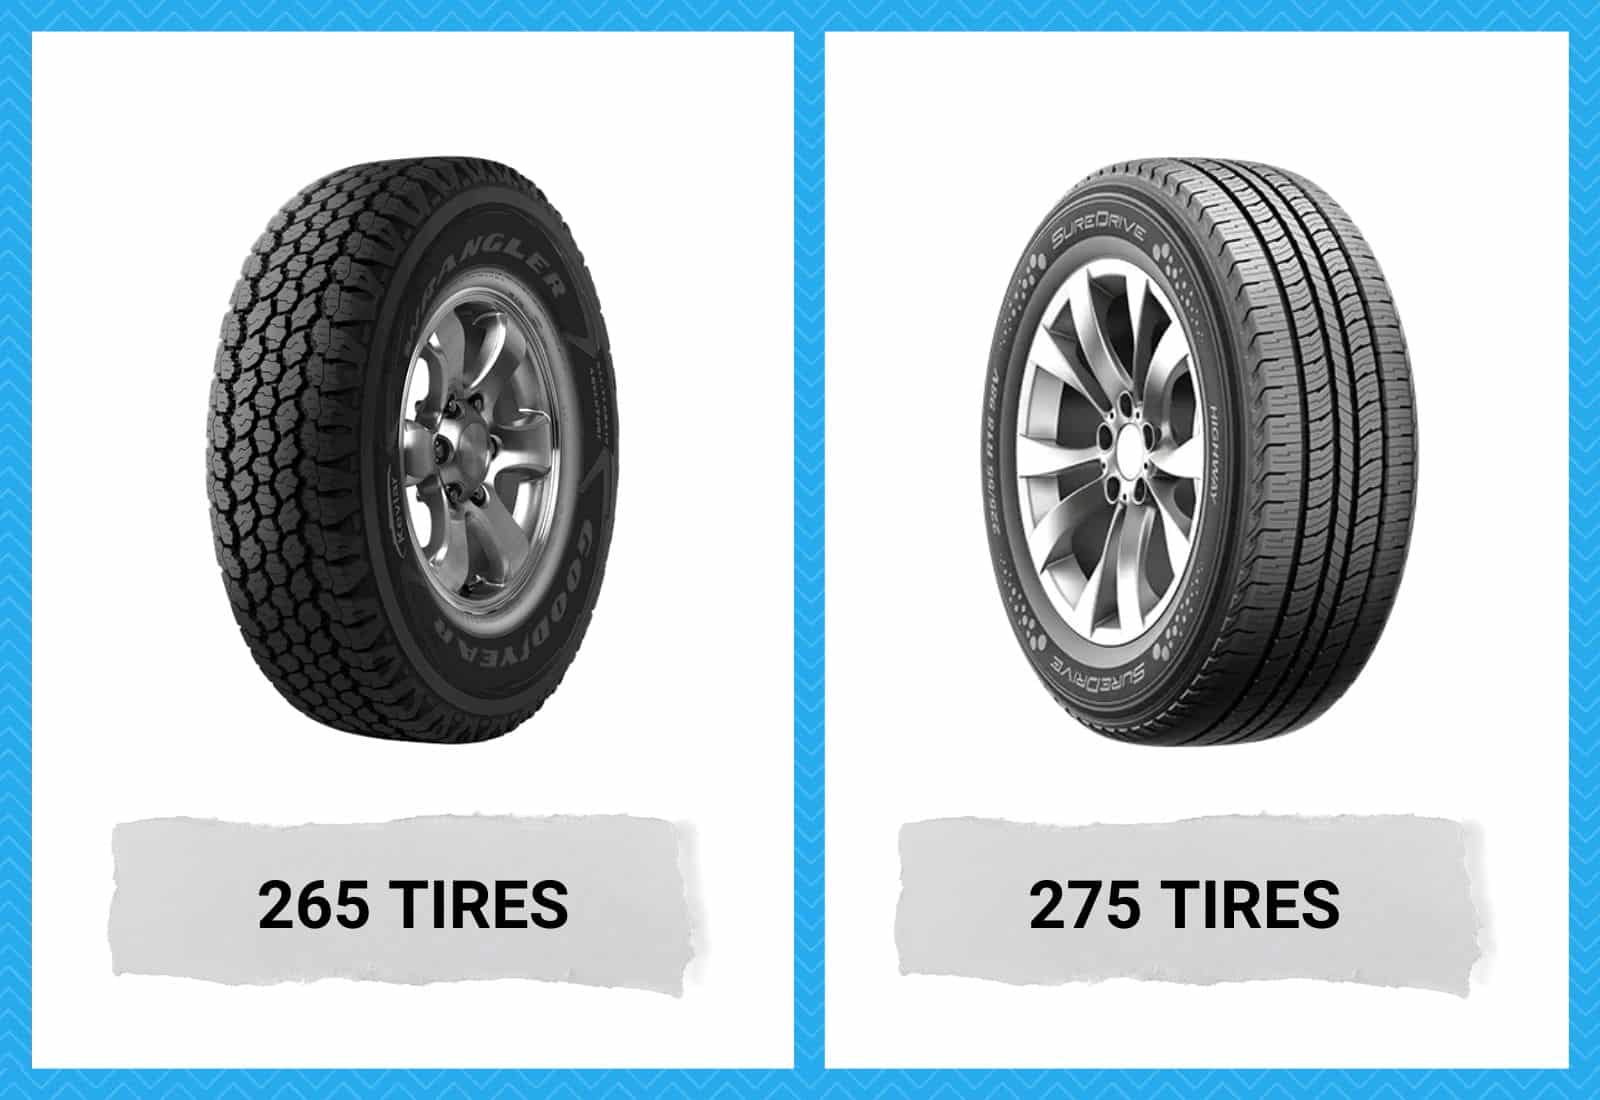 265 vs 275 Tires